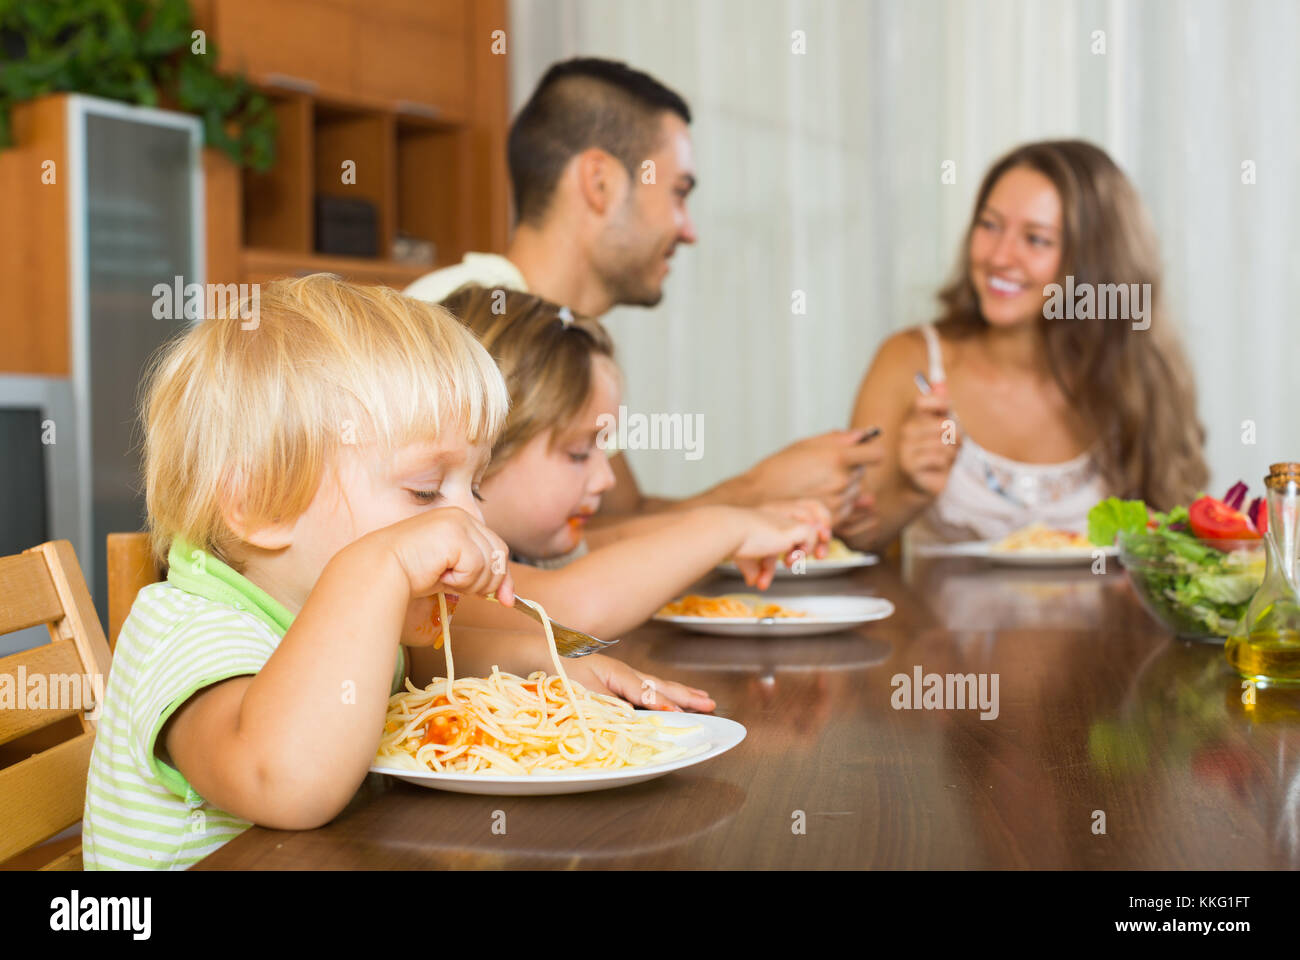 Smiling young positive famille de quatre personnes en train de déjeuner avec les spaghettis à la maison Banque D'Images